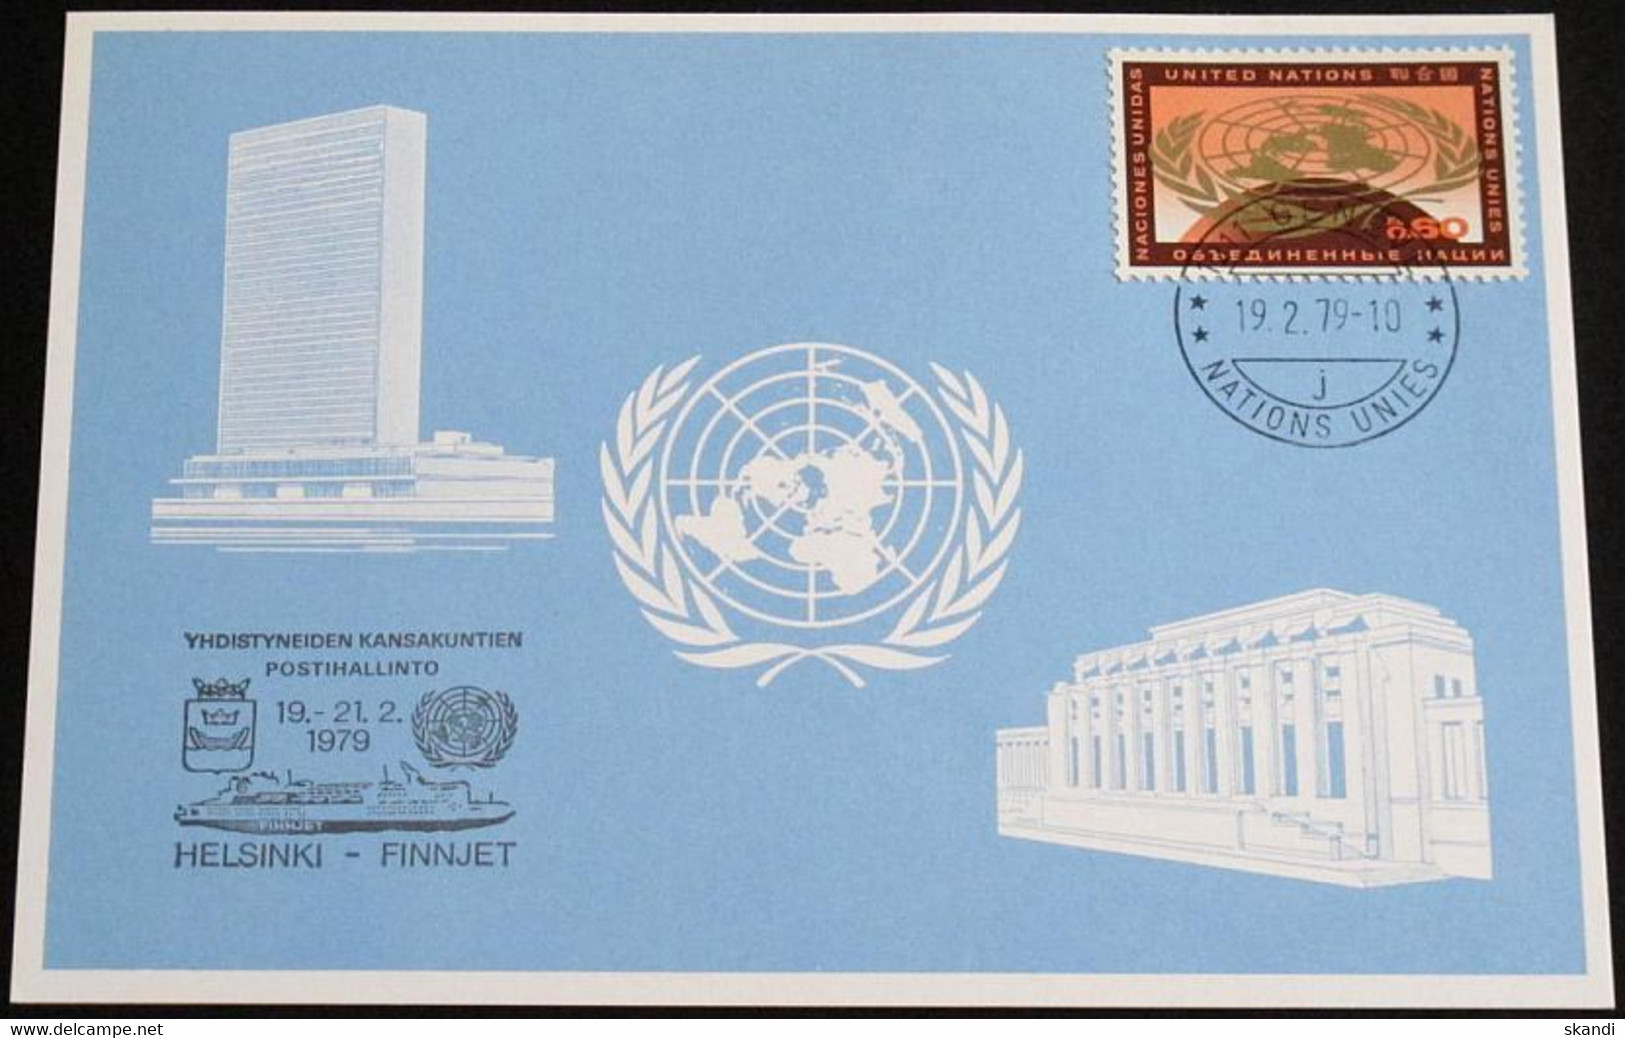 UNO GENF 1979 Mi-Nr. 74 Blaue Karte - Blue Card Mit Erinnerungsstempel HELSINKI - FINNJET - Cartas & Documentos